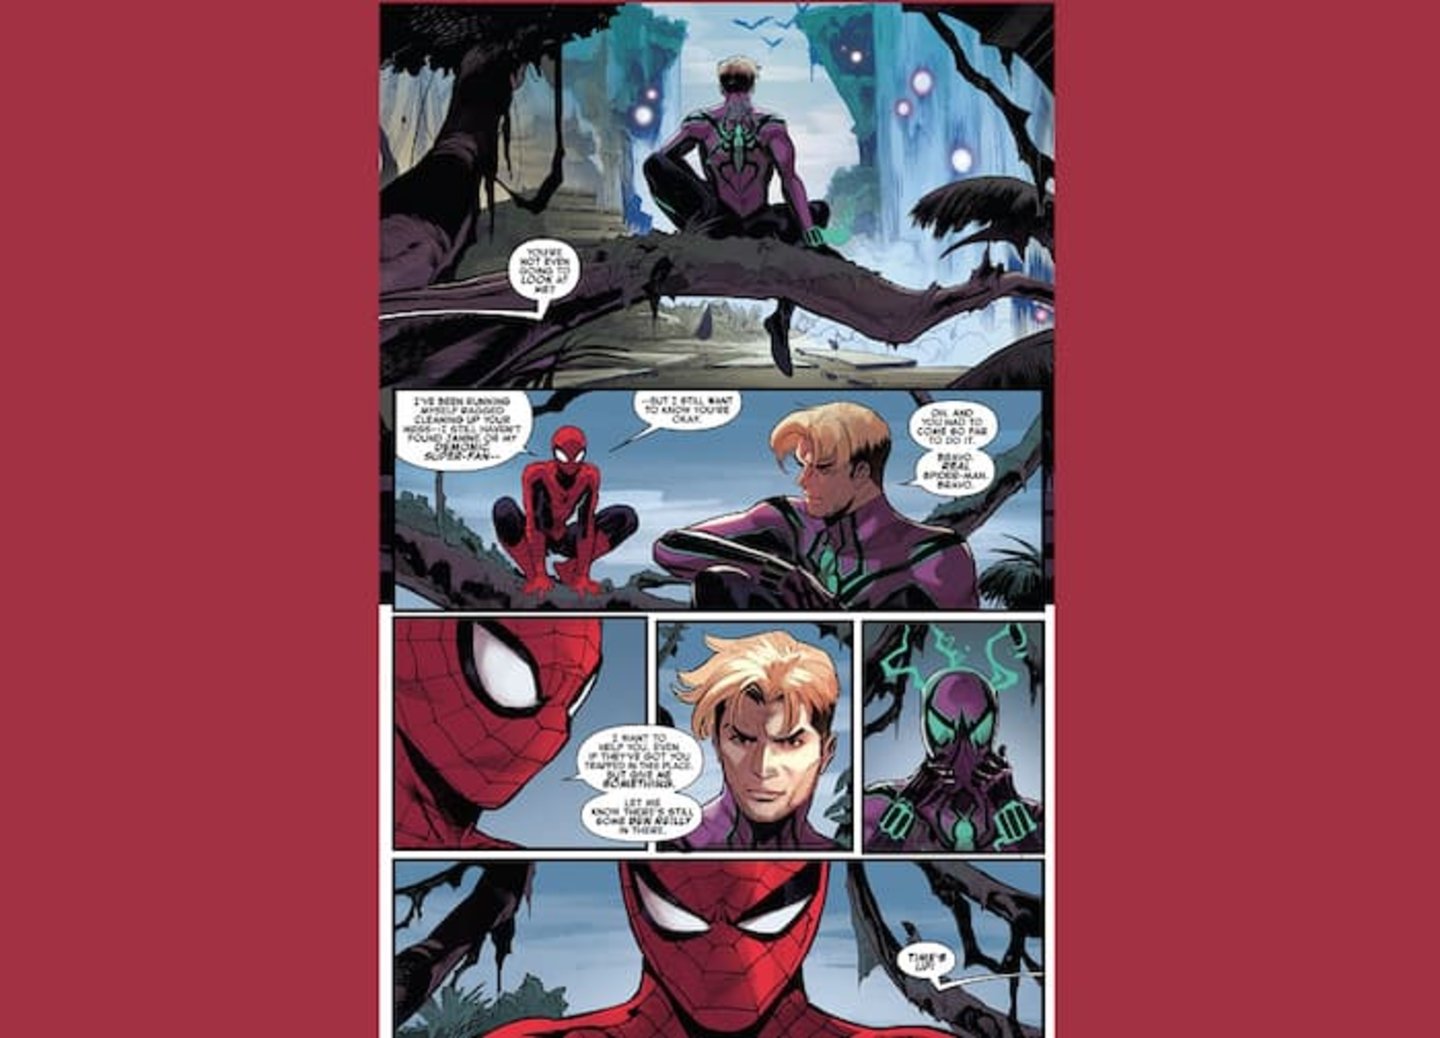 Spider-Man (Peter Parker) y Chasm (Ben Reilly) teniendo una conversación, imágenes extraídas de las últimas páginas del volumen #1 del cómic Dark Web Finale